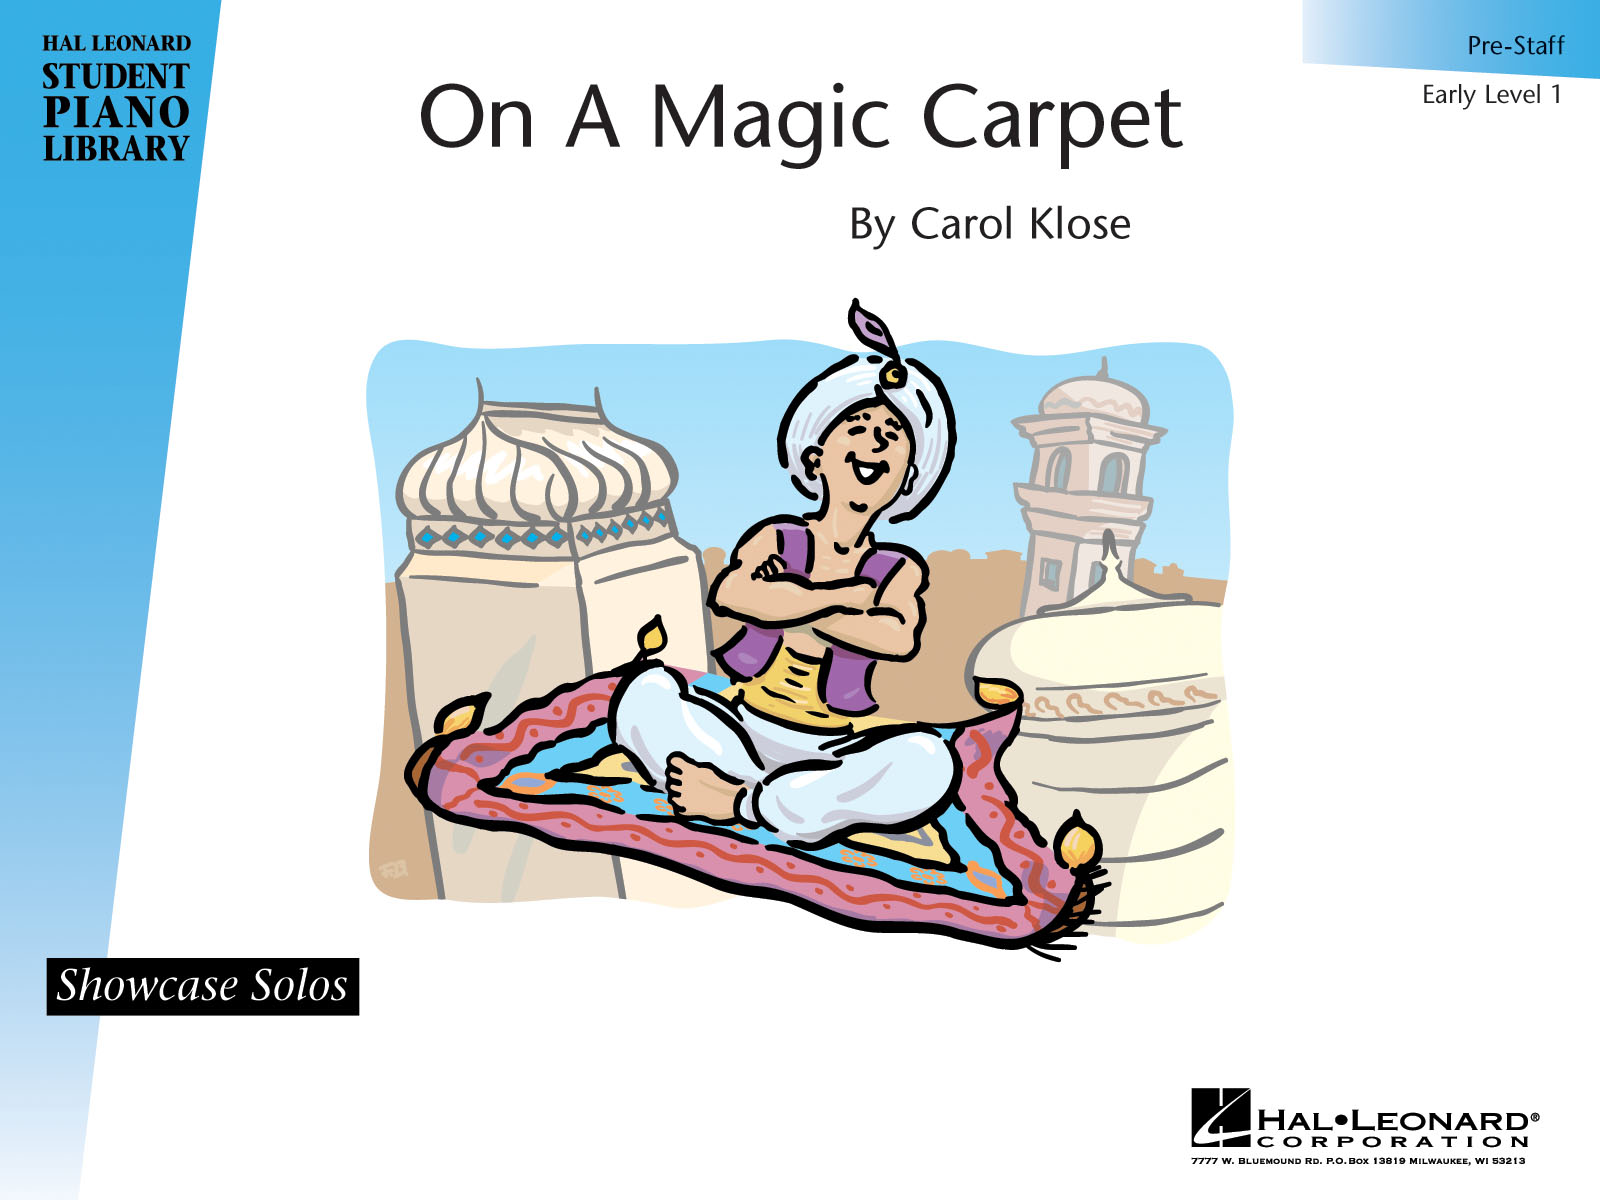 On a Magic Carpet(Hal Leonard Student Piano Library Showcase Solo Level 1/Pre-Staff)